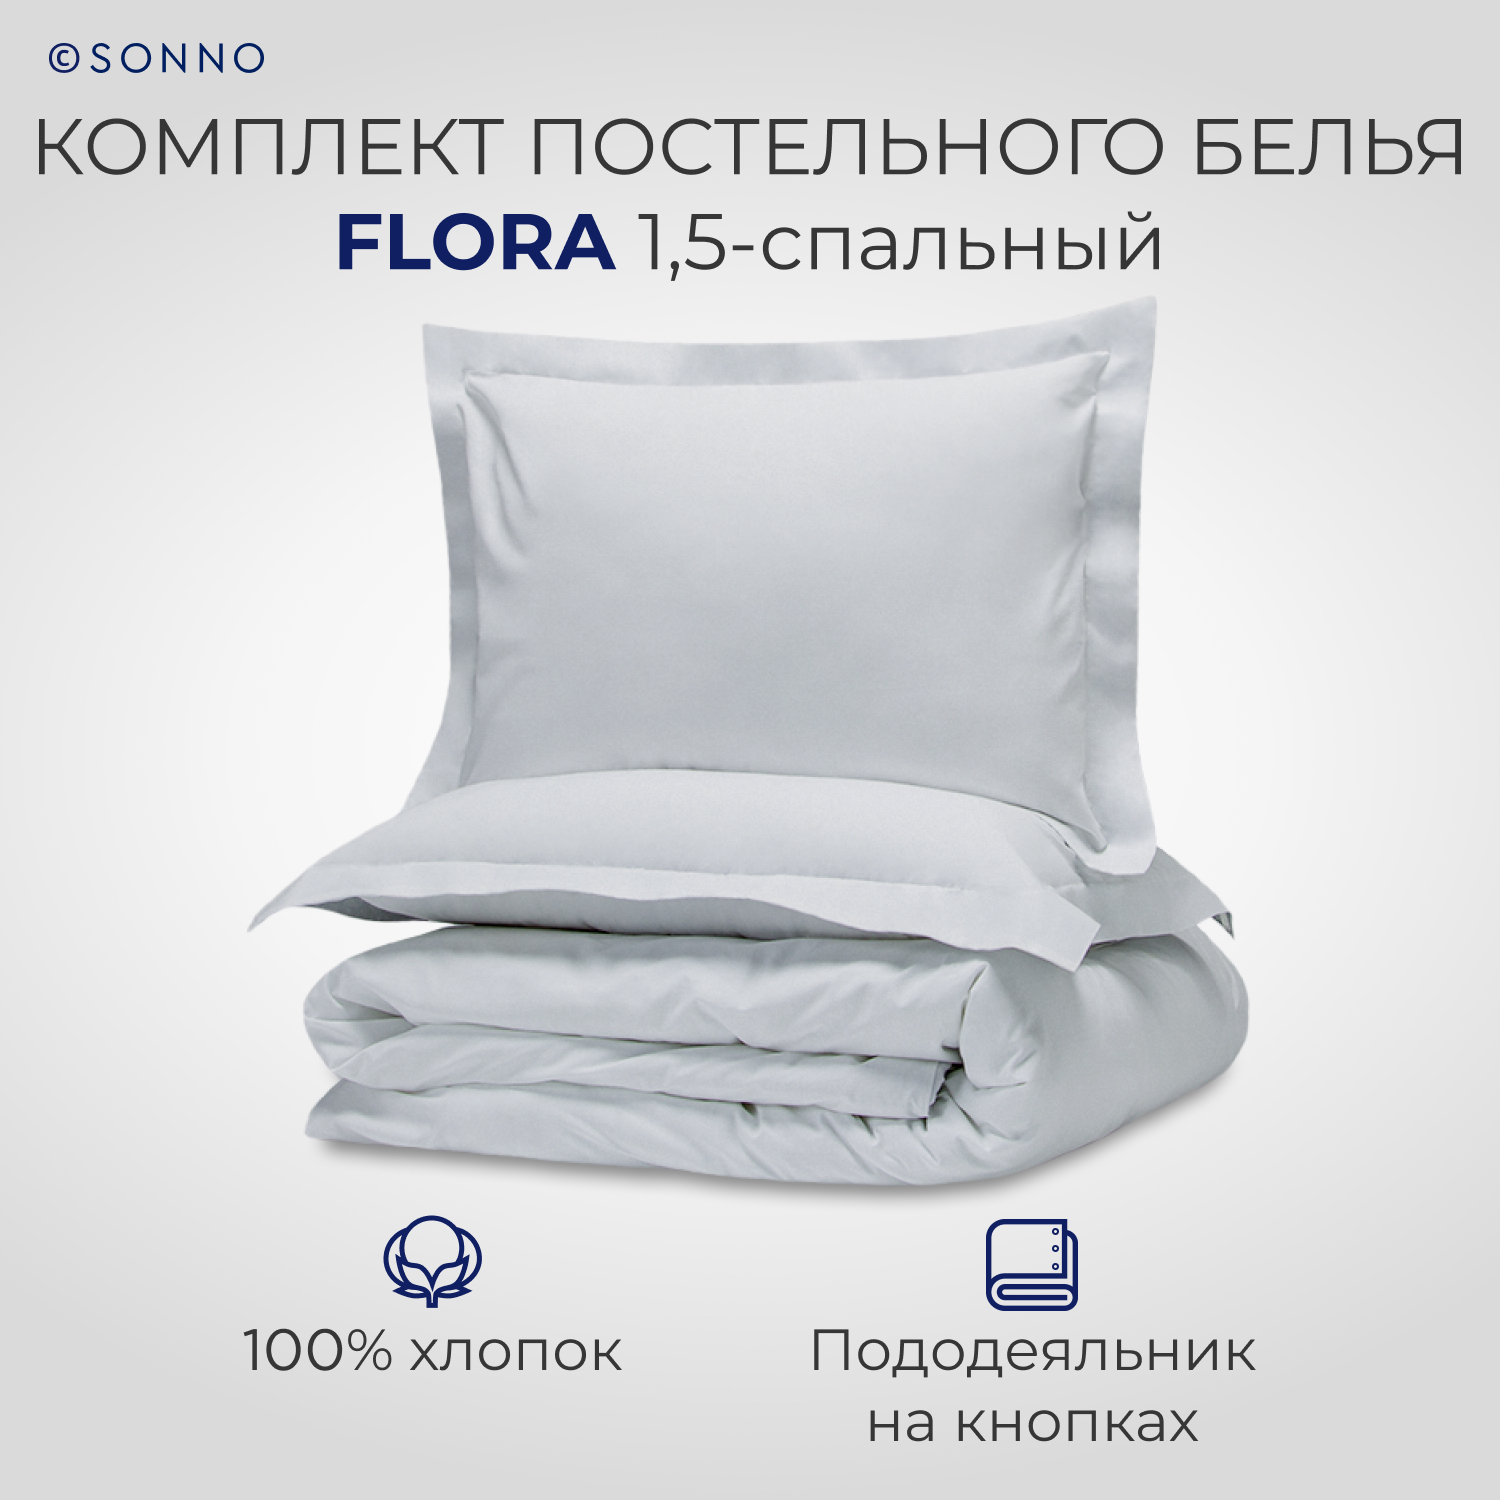 Комплект постельного белья SONNO FLORA 1.5-спальный цвет Норвежский серый - фото 1